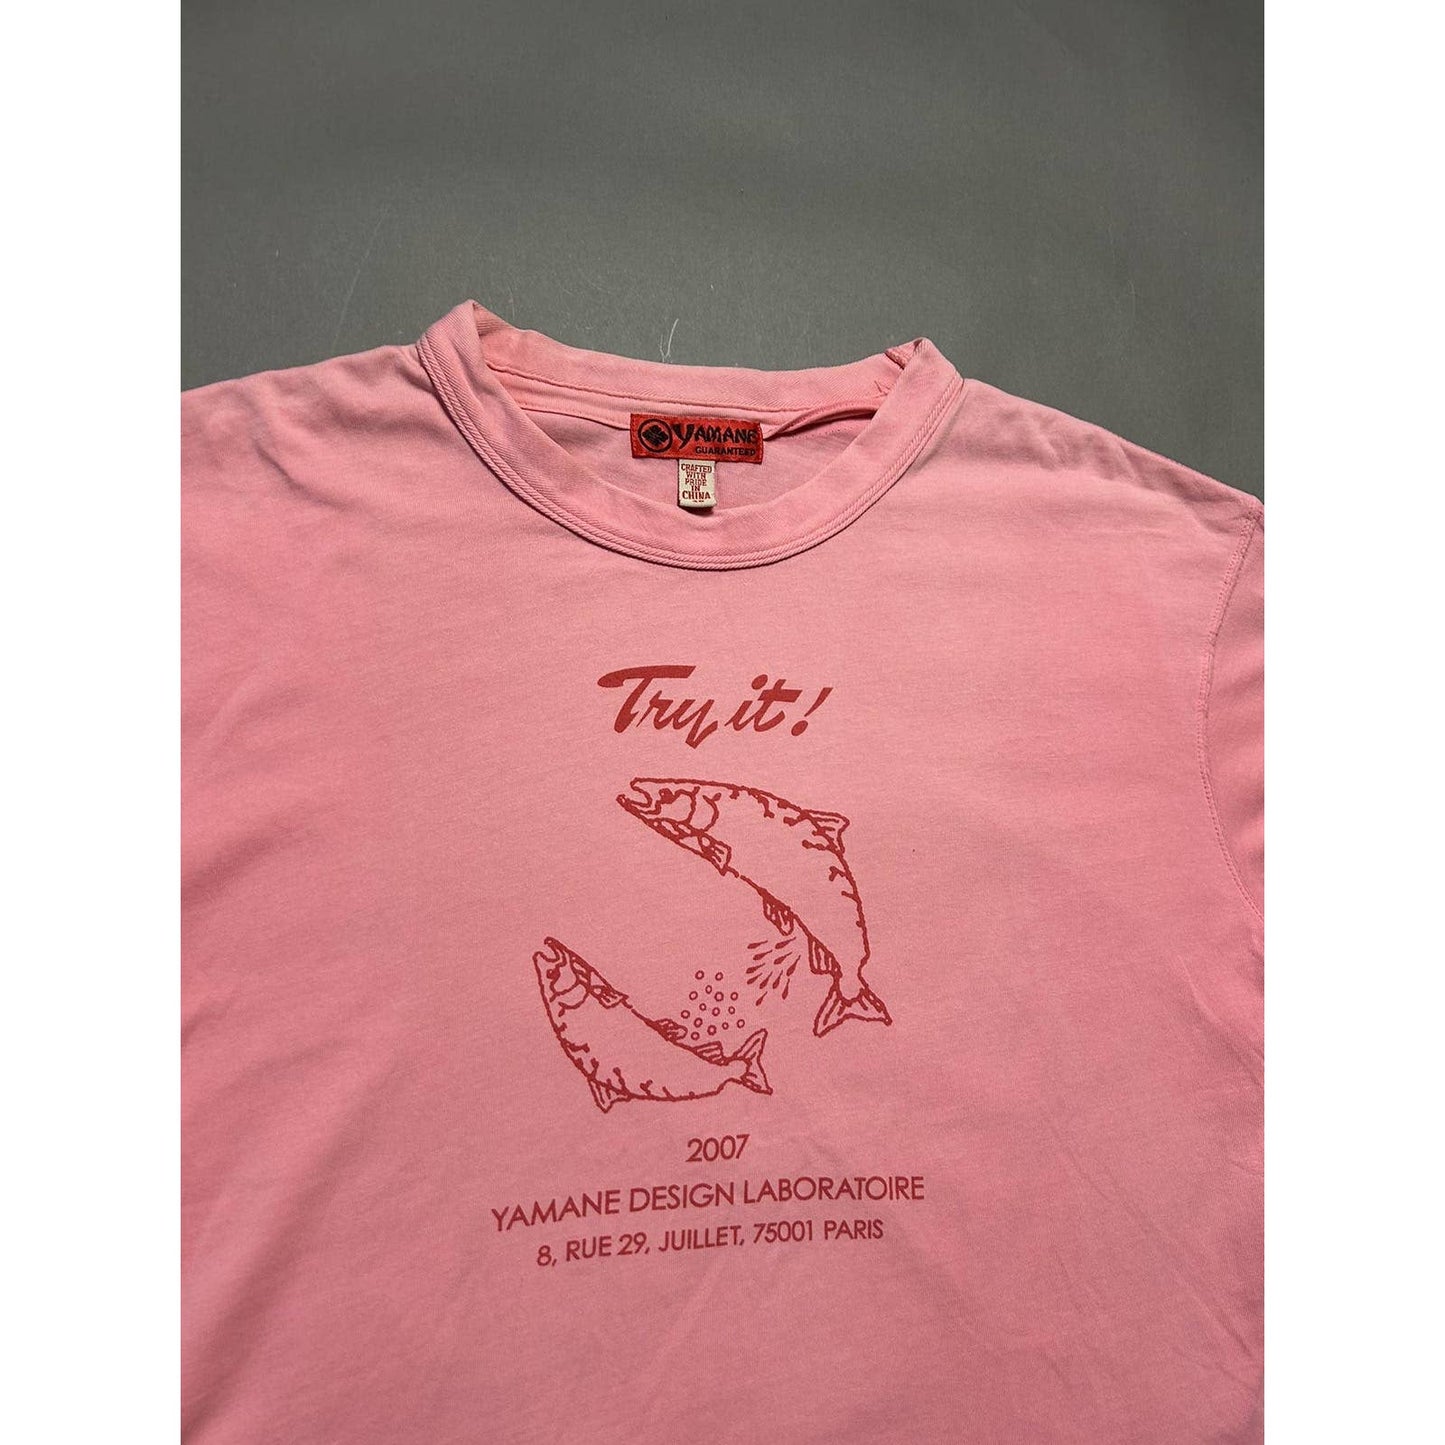 Evisu T-shirt pink big logo Try It Fish 2007 Yamane Paris